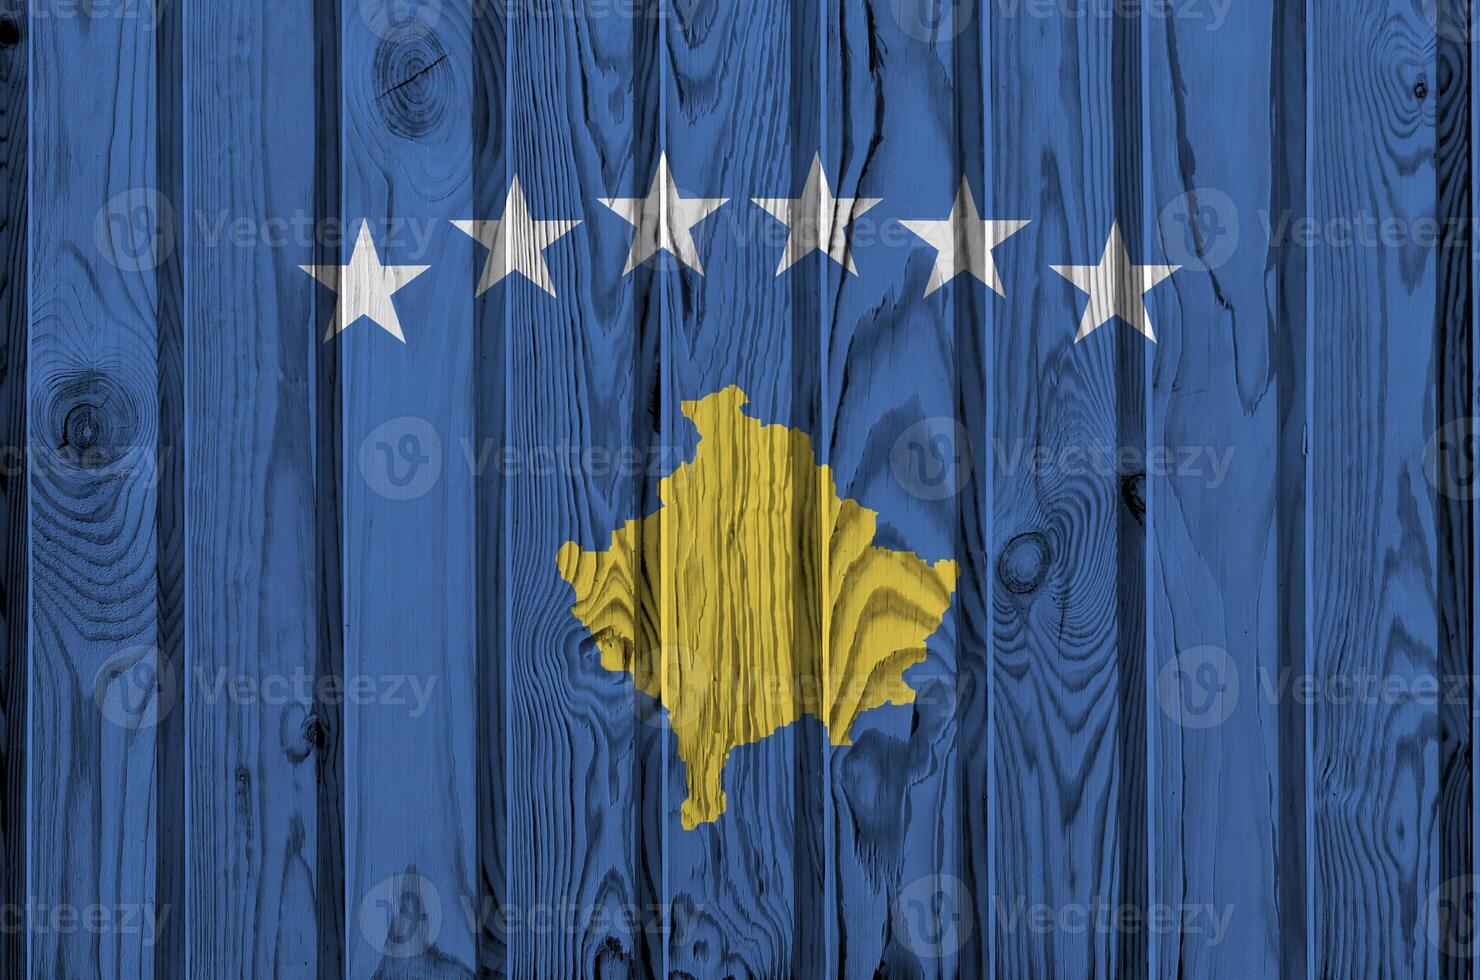 kosovo flagga avbildad i ljus måla färger på gammal trä- vägg. texturerad baner på grov bakgrund foto